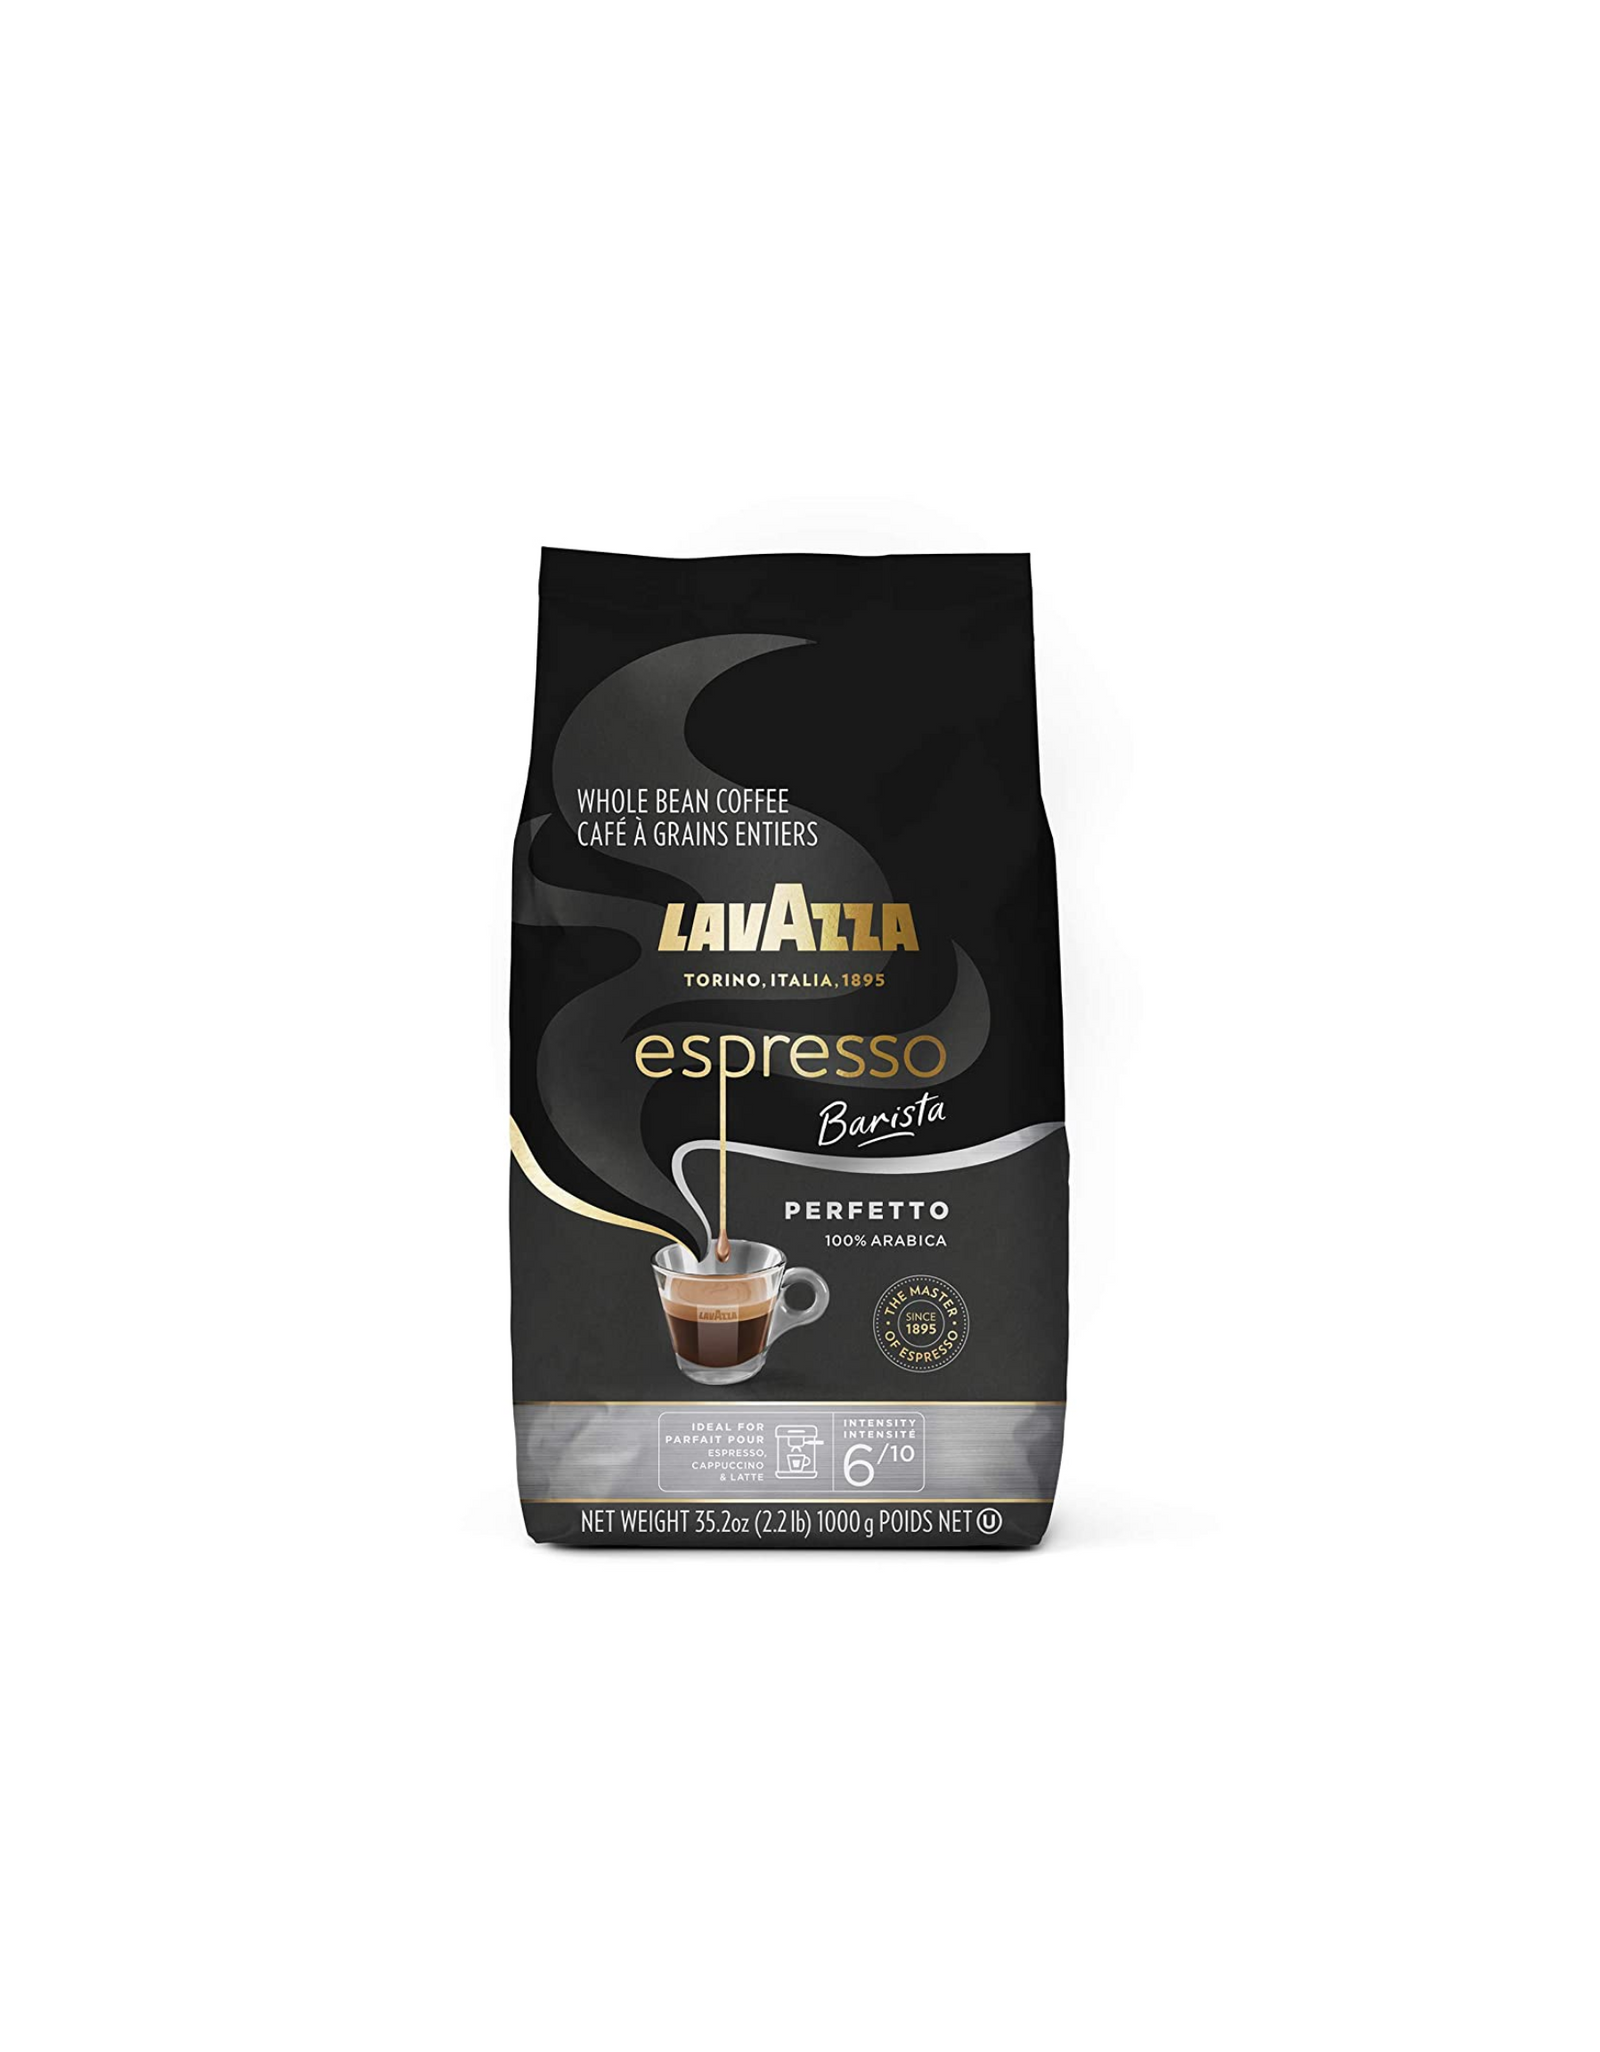 Lavazza Espresso Barista Perfetto Whole Bean Coffee Blend, 100% Arabica, Medium Espresso Roast, 35.2 oz (2.2 lb.)